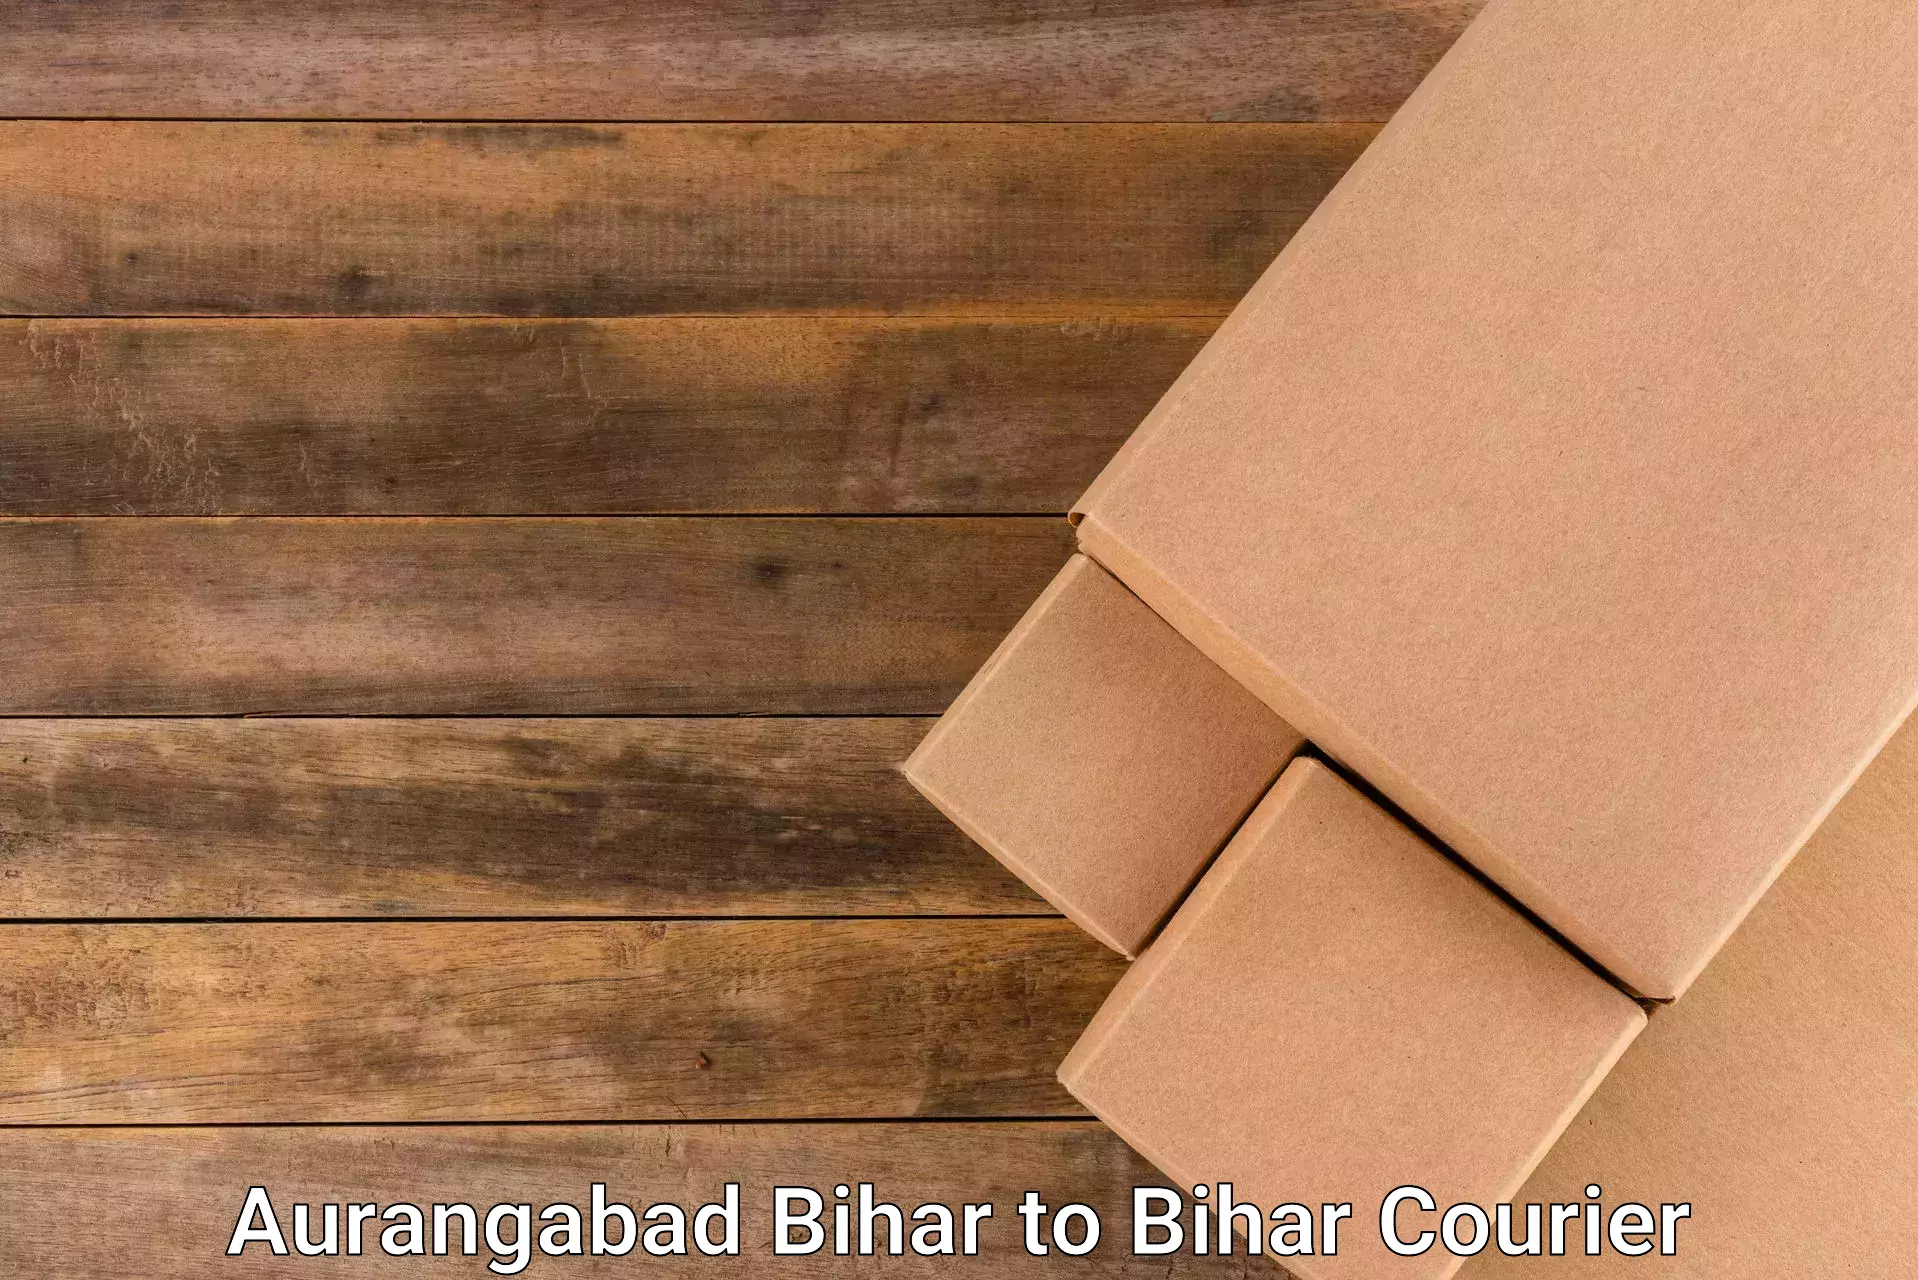 Logistics efficiency Aurangabad Bihar to Kishanganj